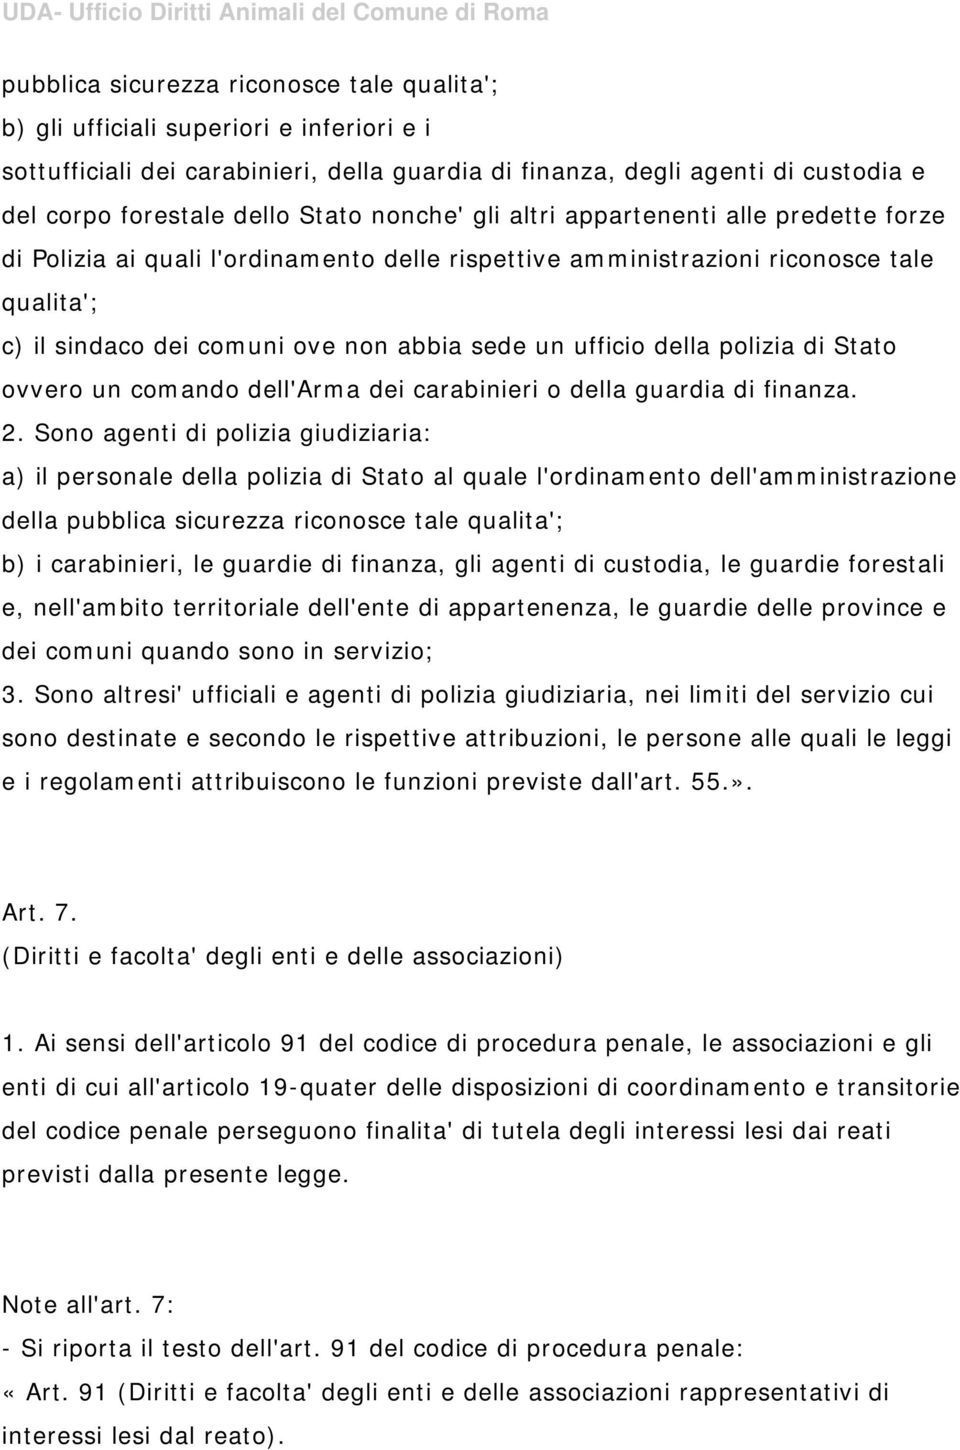 ufficio della polizia di Stato ovvero un comando dell'arma dei carabinieri o della guardia di finanza. 2.